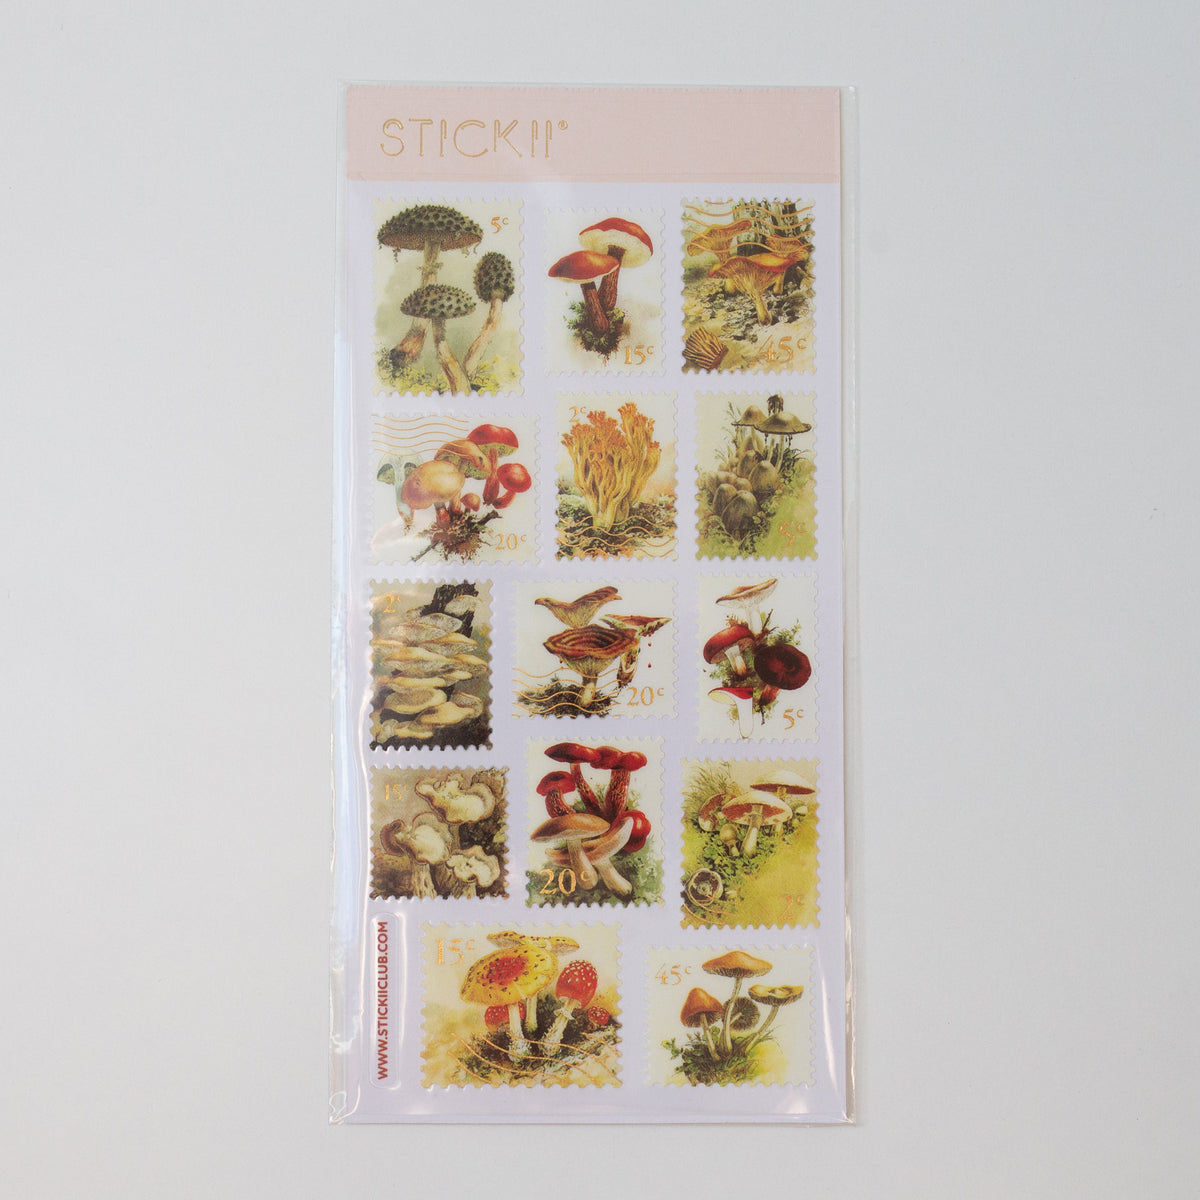 Stickii Stickervel Mushroom stamps